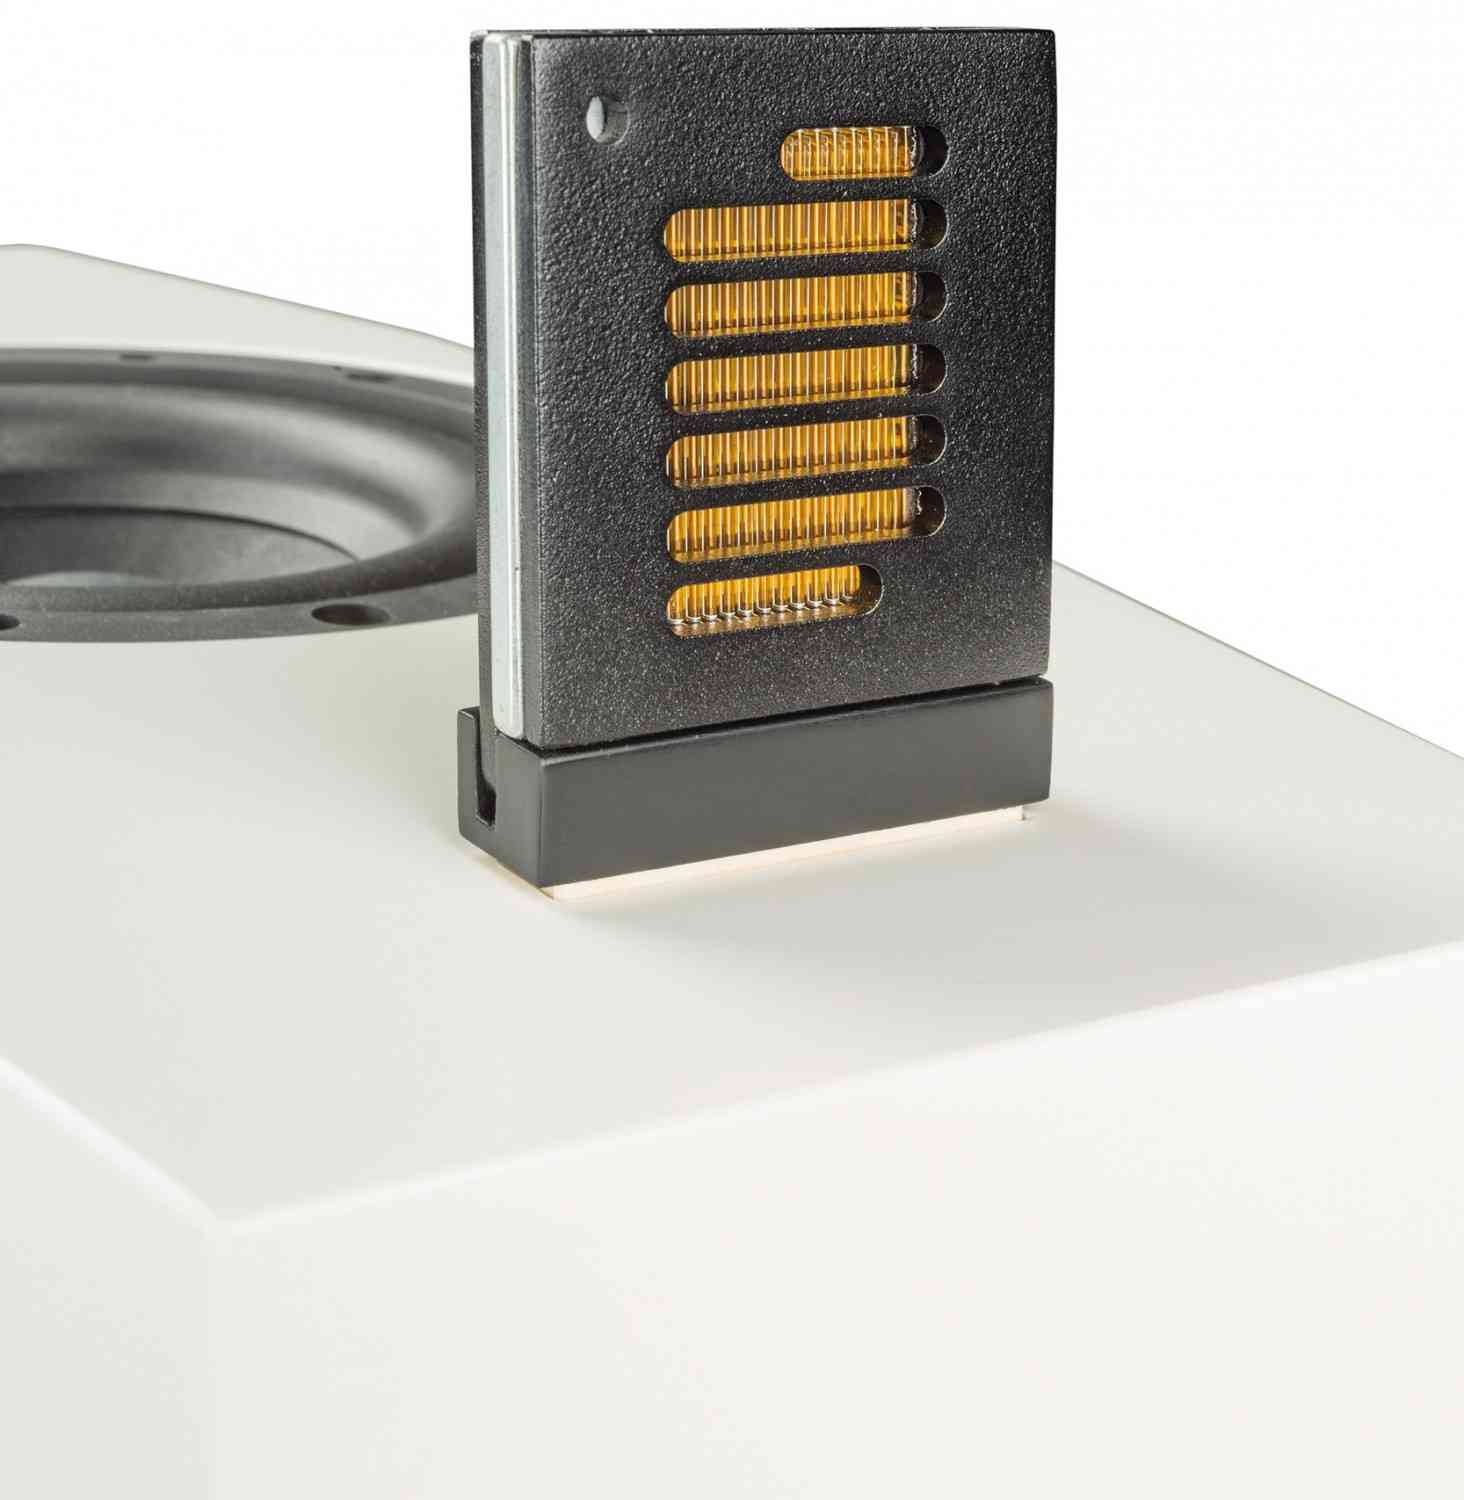 Lautsprecher Stereo Wiener Lautsprecher Manufaktur Sissi im Test, Bild 5